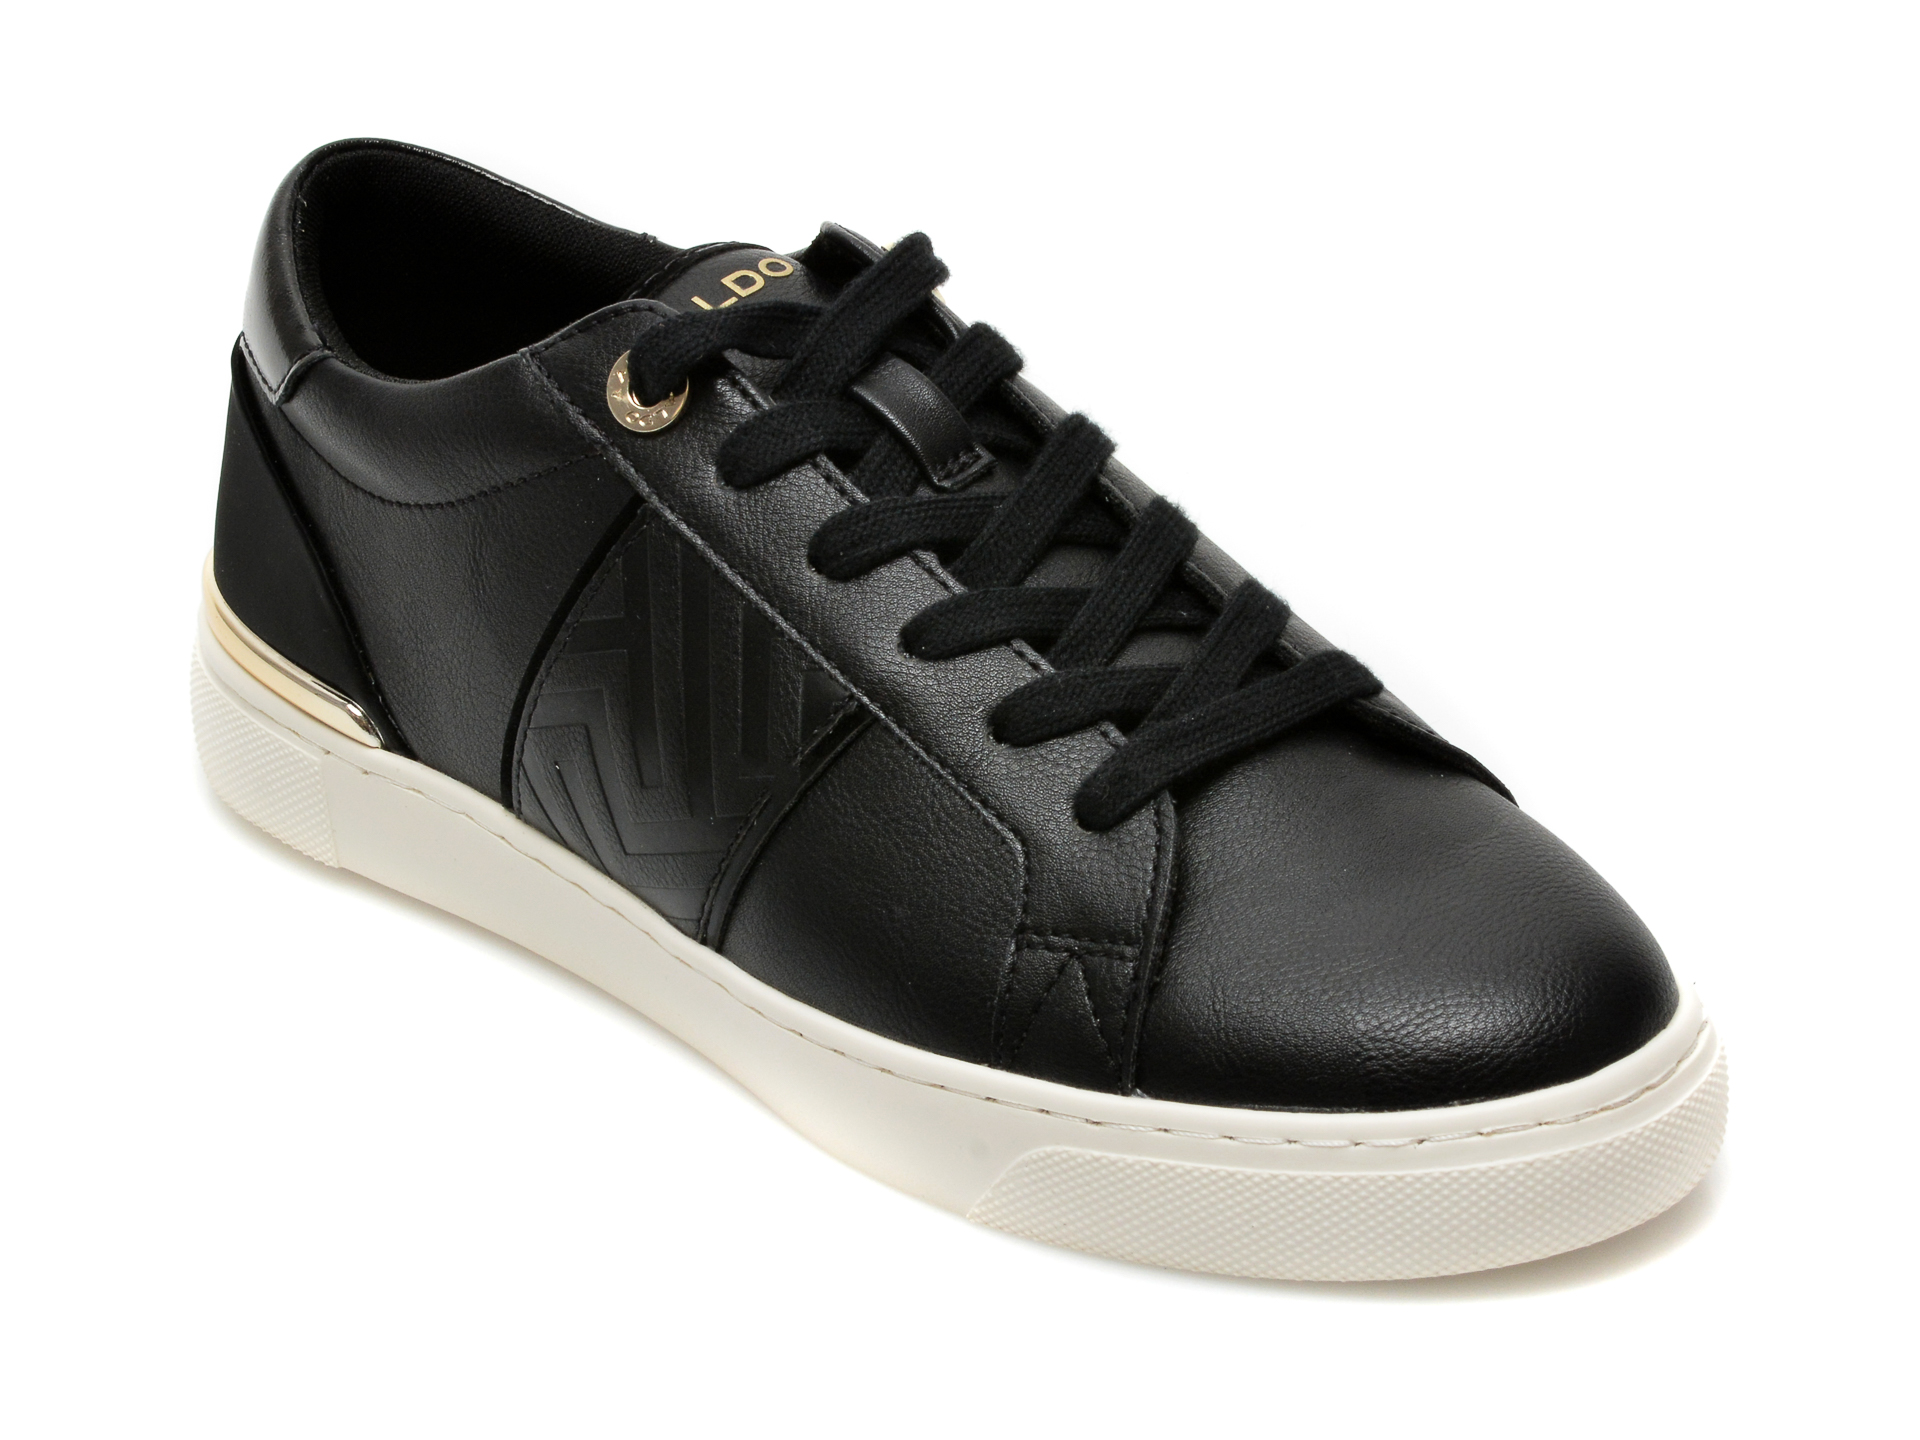 Pantofi sport ALDO negri, DAOSSI001, din piele ecologica Aldo